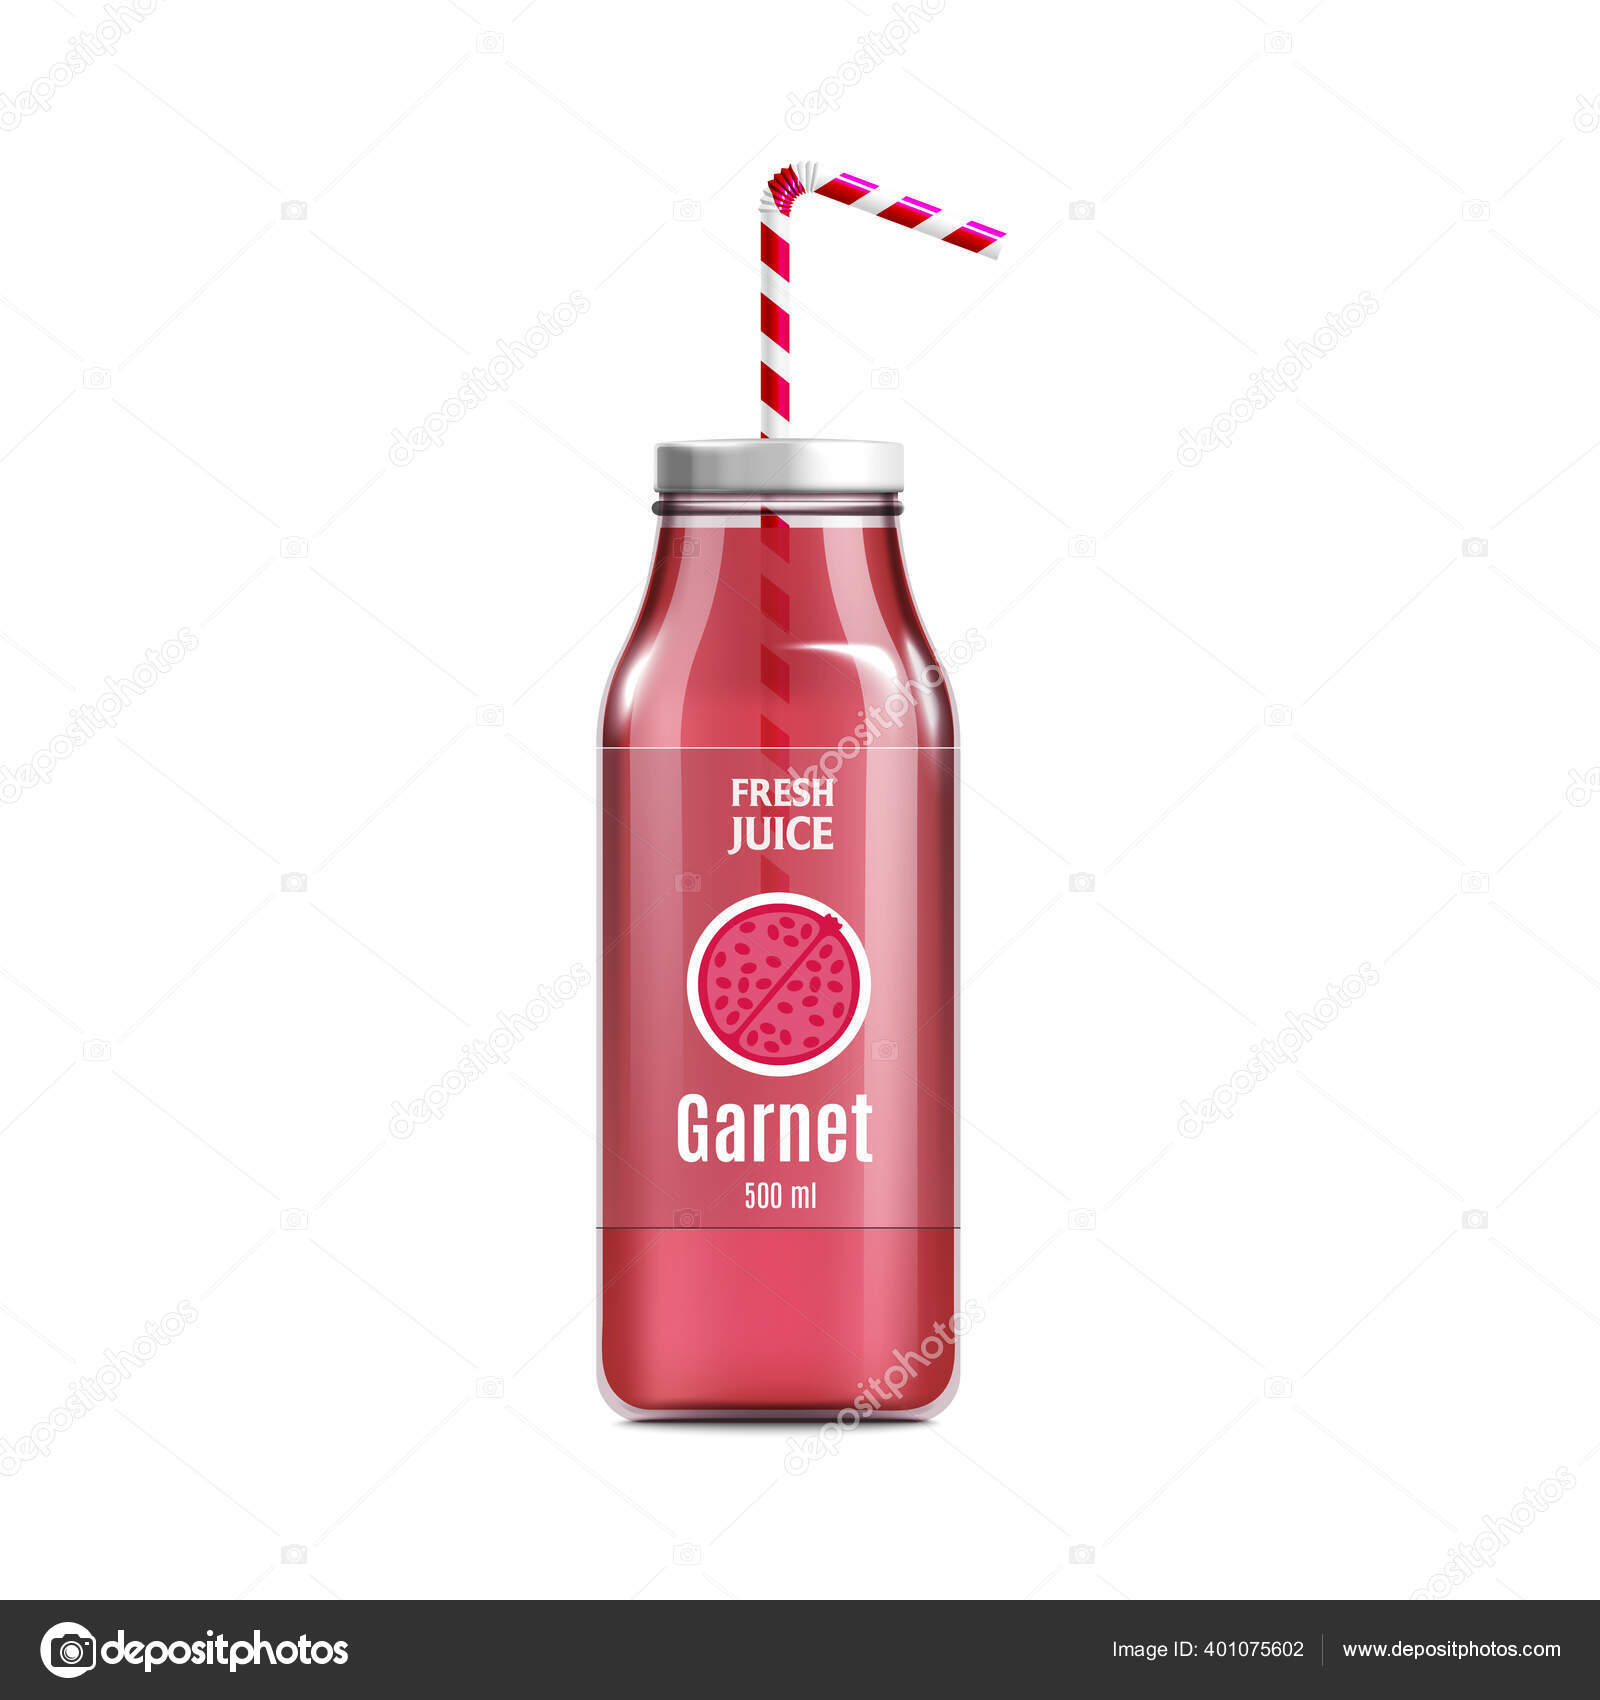 https://st4.depositphotos.com/1832477/40107/v/1600/depositphotos_401075602-stock-illustration-fresh-garnet-juice-bottle-mockup.jpg